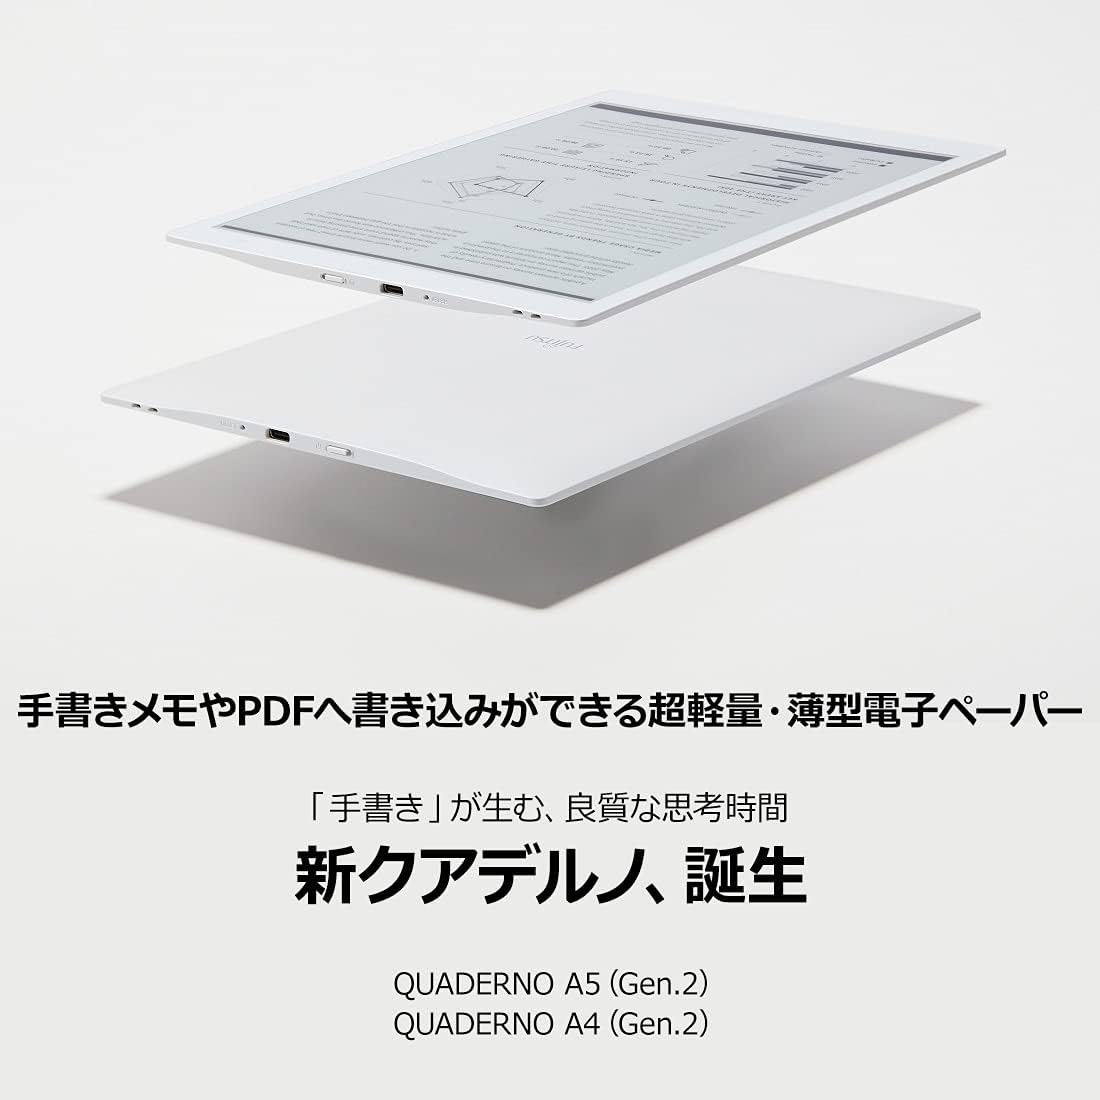 本物の 富士通10.3型 クワデルノ FMVD51 ホワイト asakusa.sub.jp